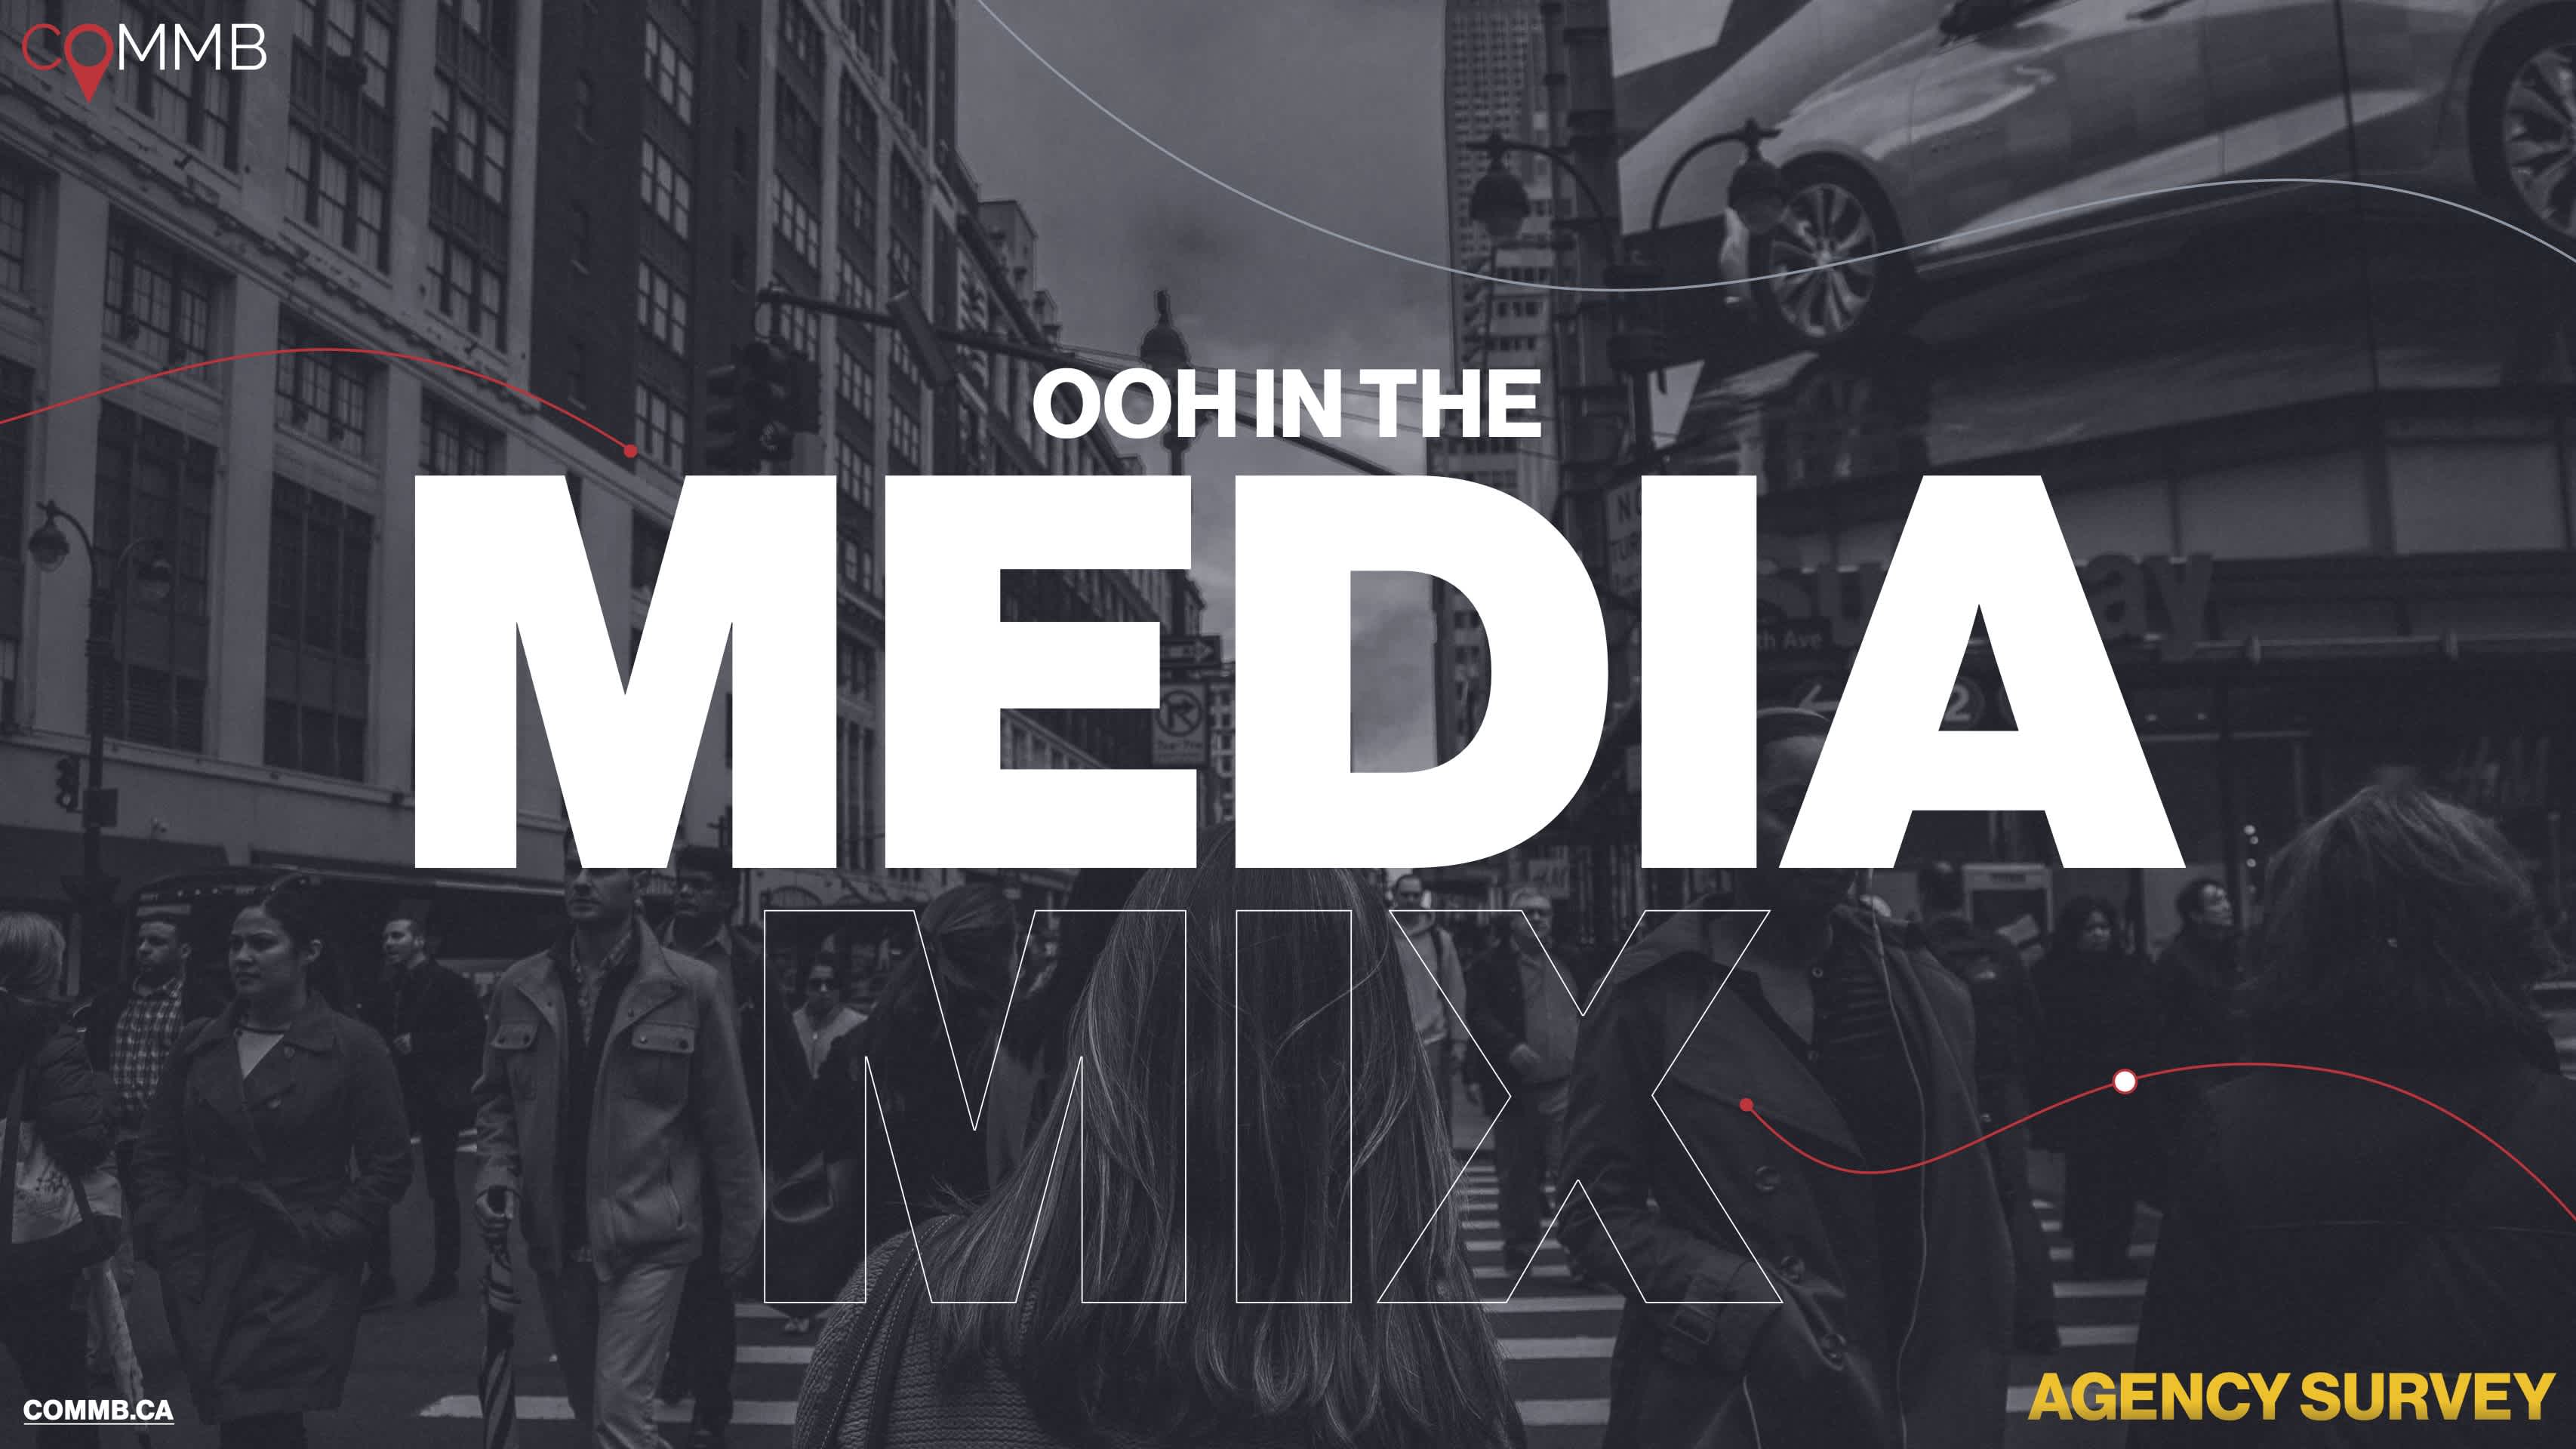 COMMB Agency Survey: OOH In the Media